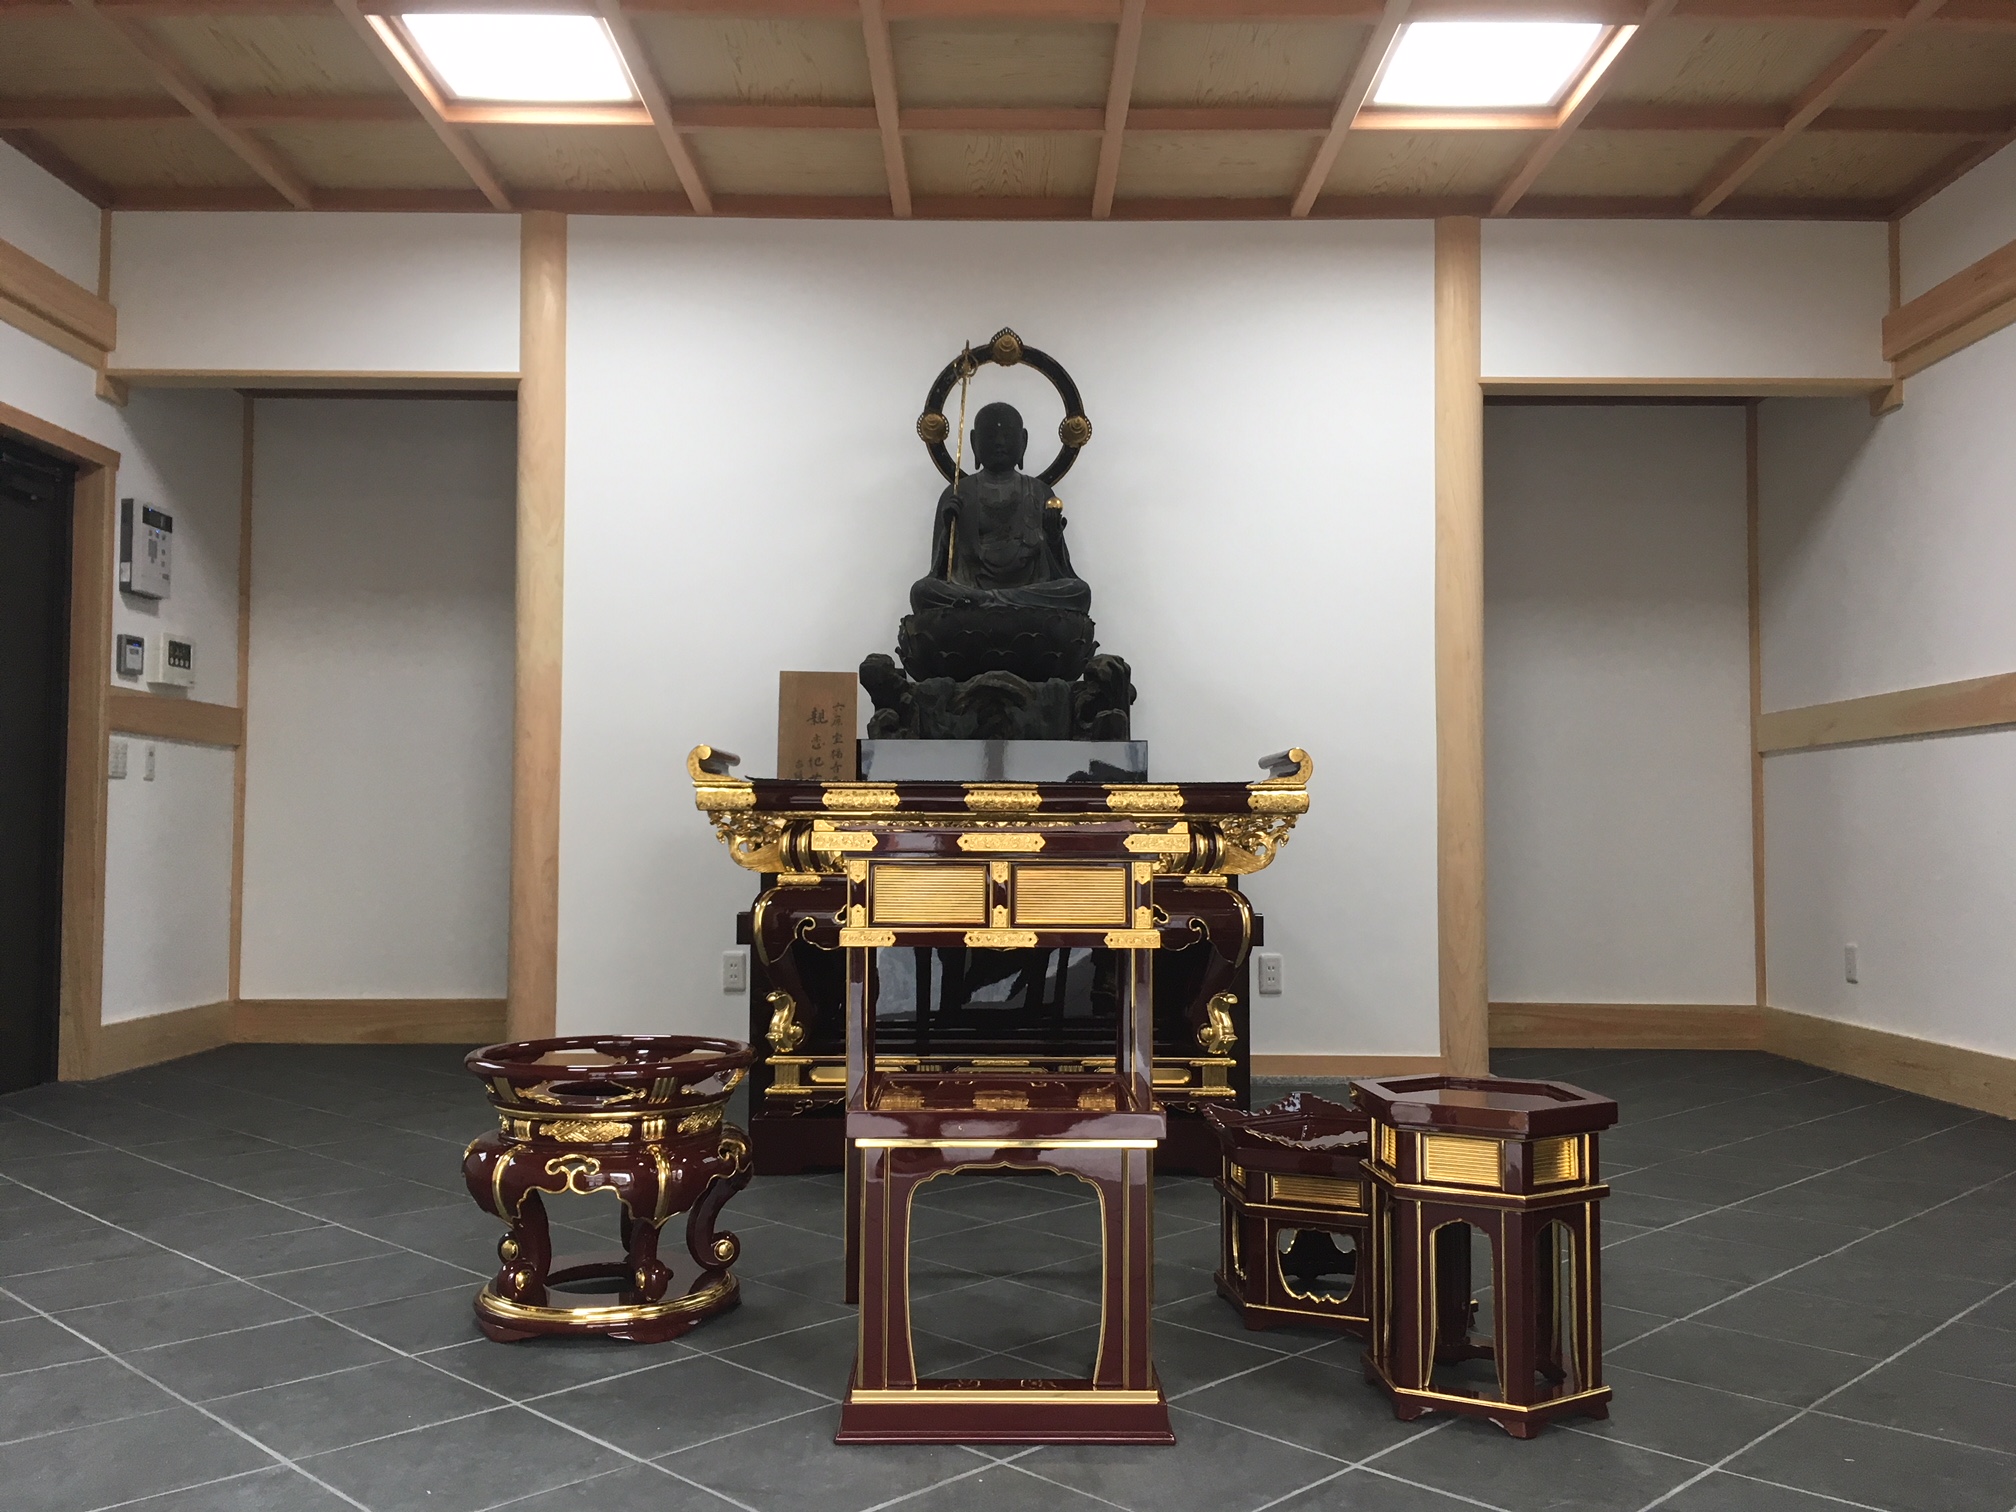 お堂に納入した寺院用具です。中央には平安時代から歴史を重ねてきた立派な仏像が安置されています。